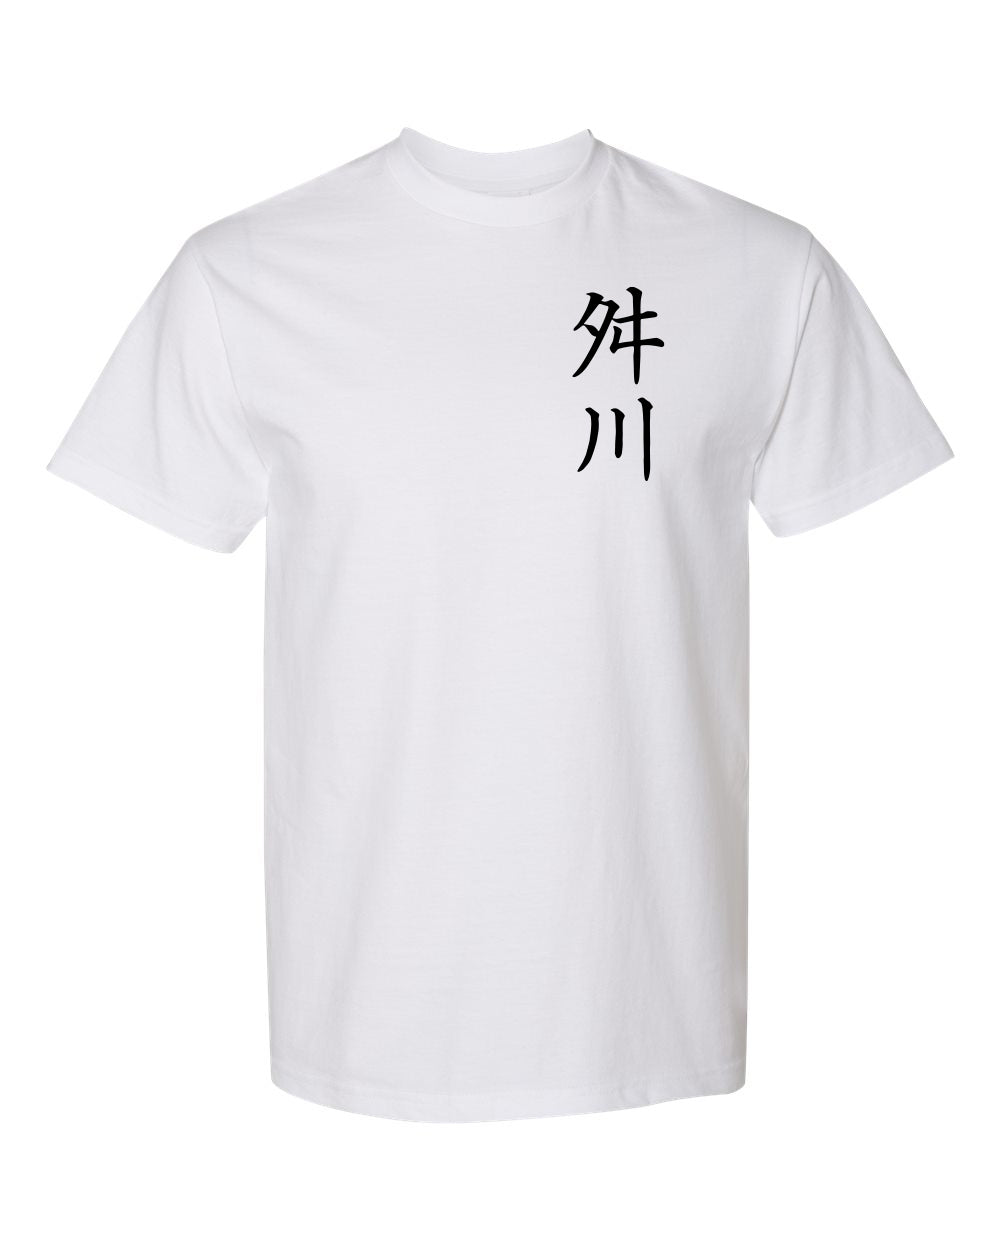 MASUKAWA Tshirt (Youth)